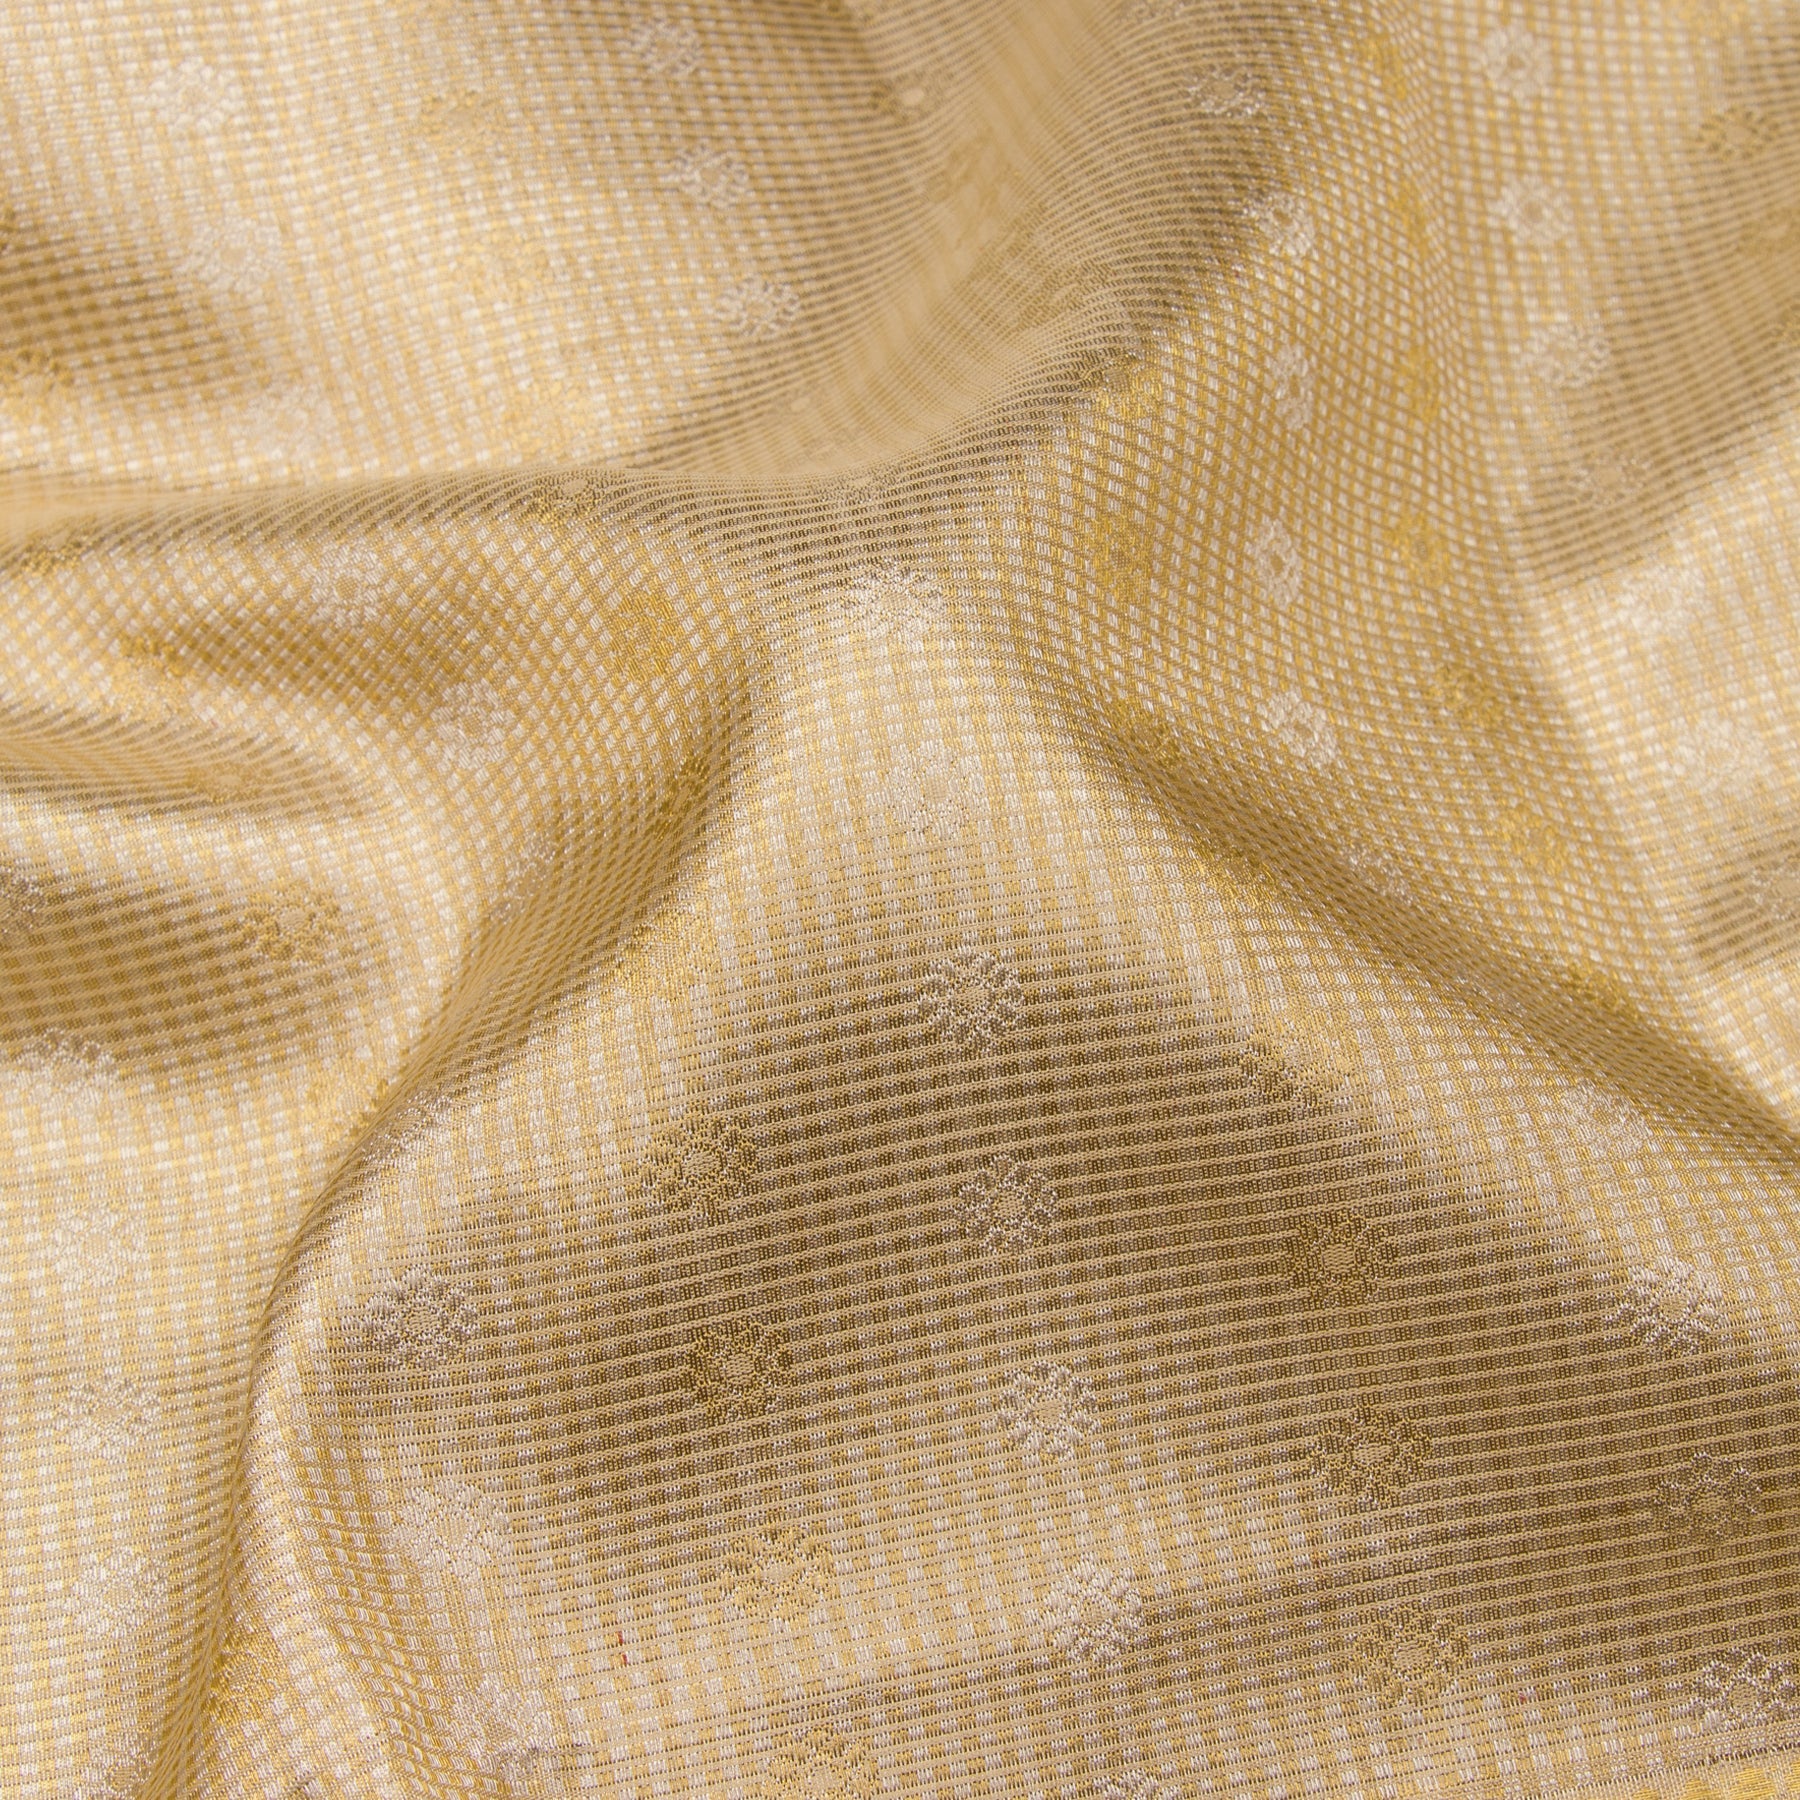 Kanakavalli Kanjivaram Silk Sari 23-110-HS001-07007 - Fabric View